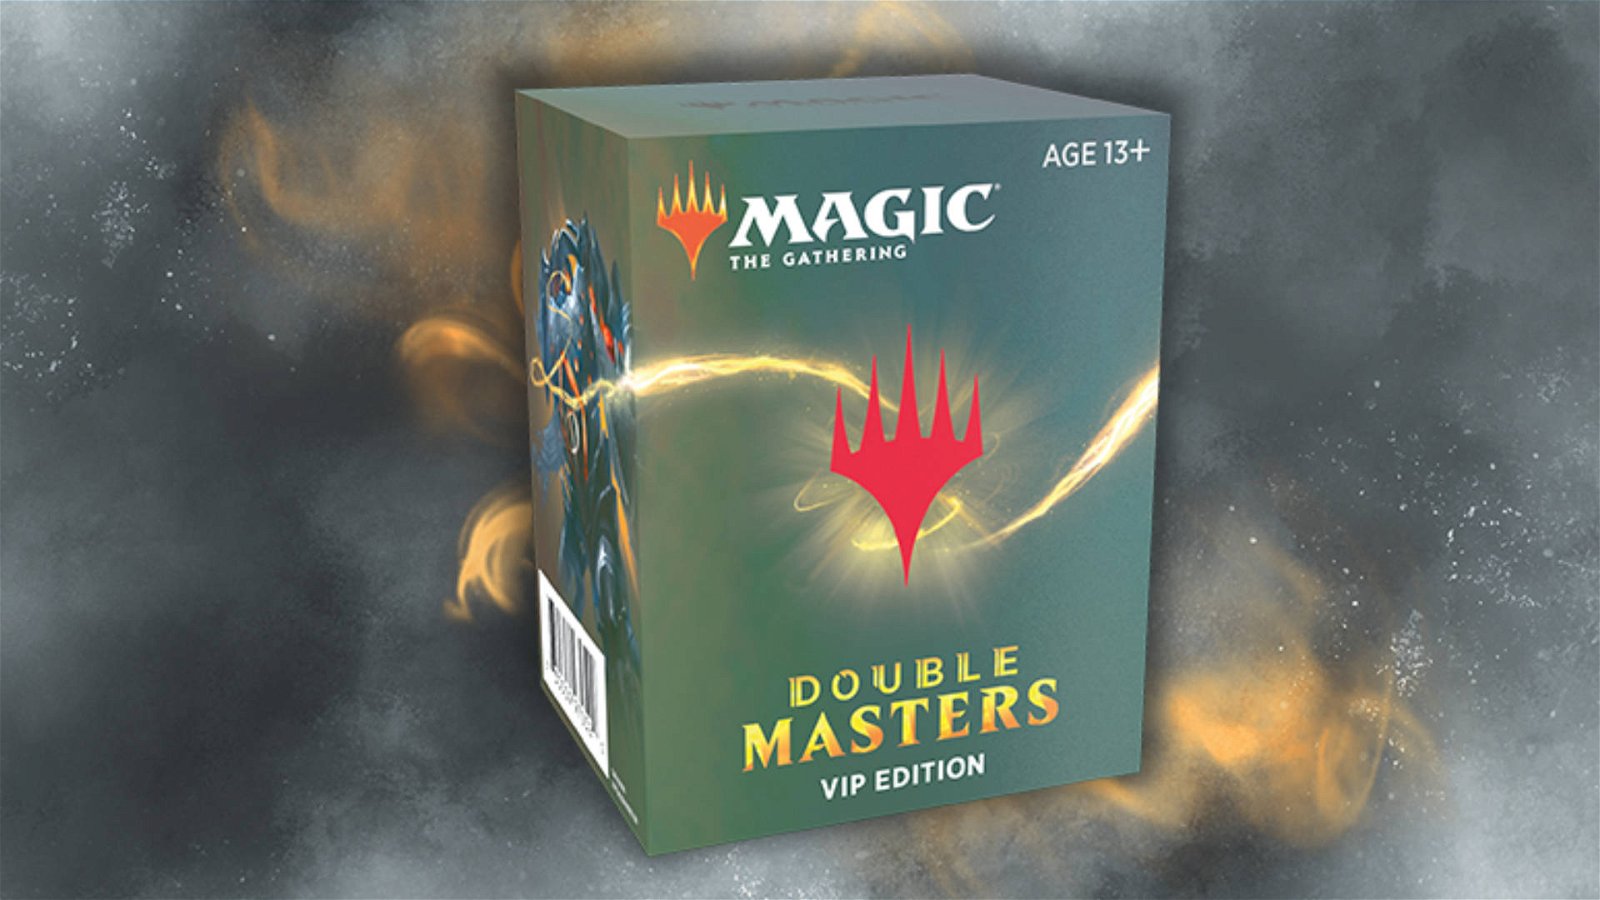 Immagine di Magic The Gathering: annunciata la "Vip Edition" di Double Masters